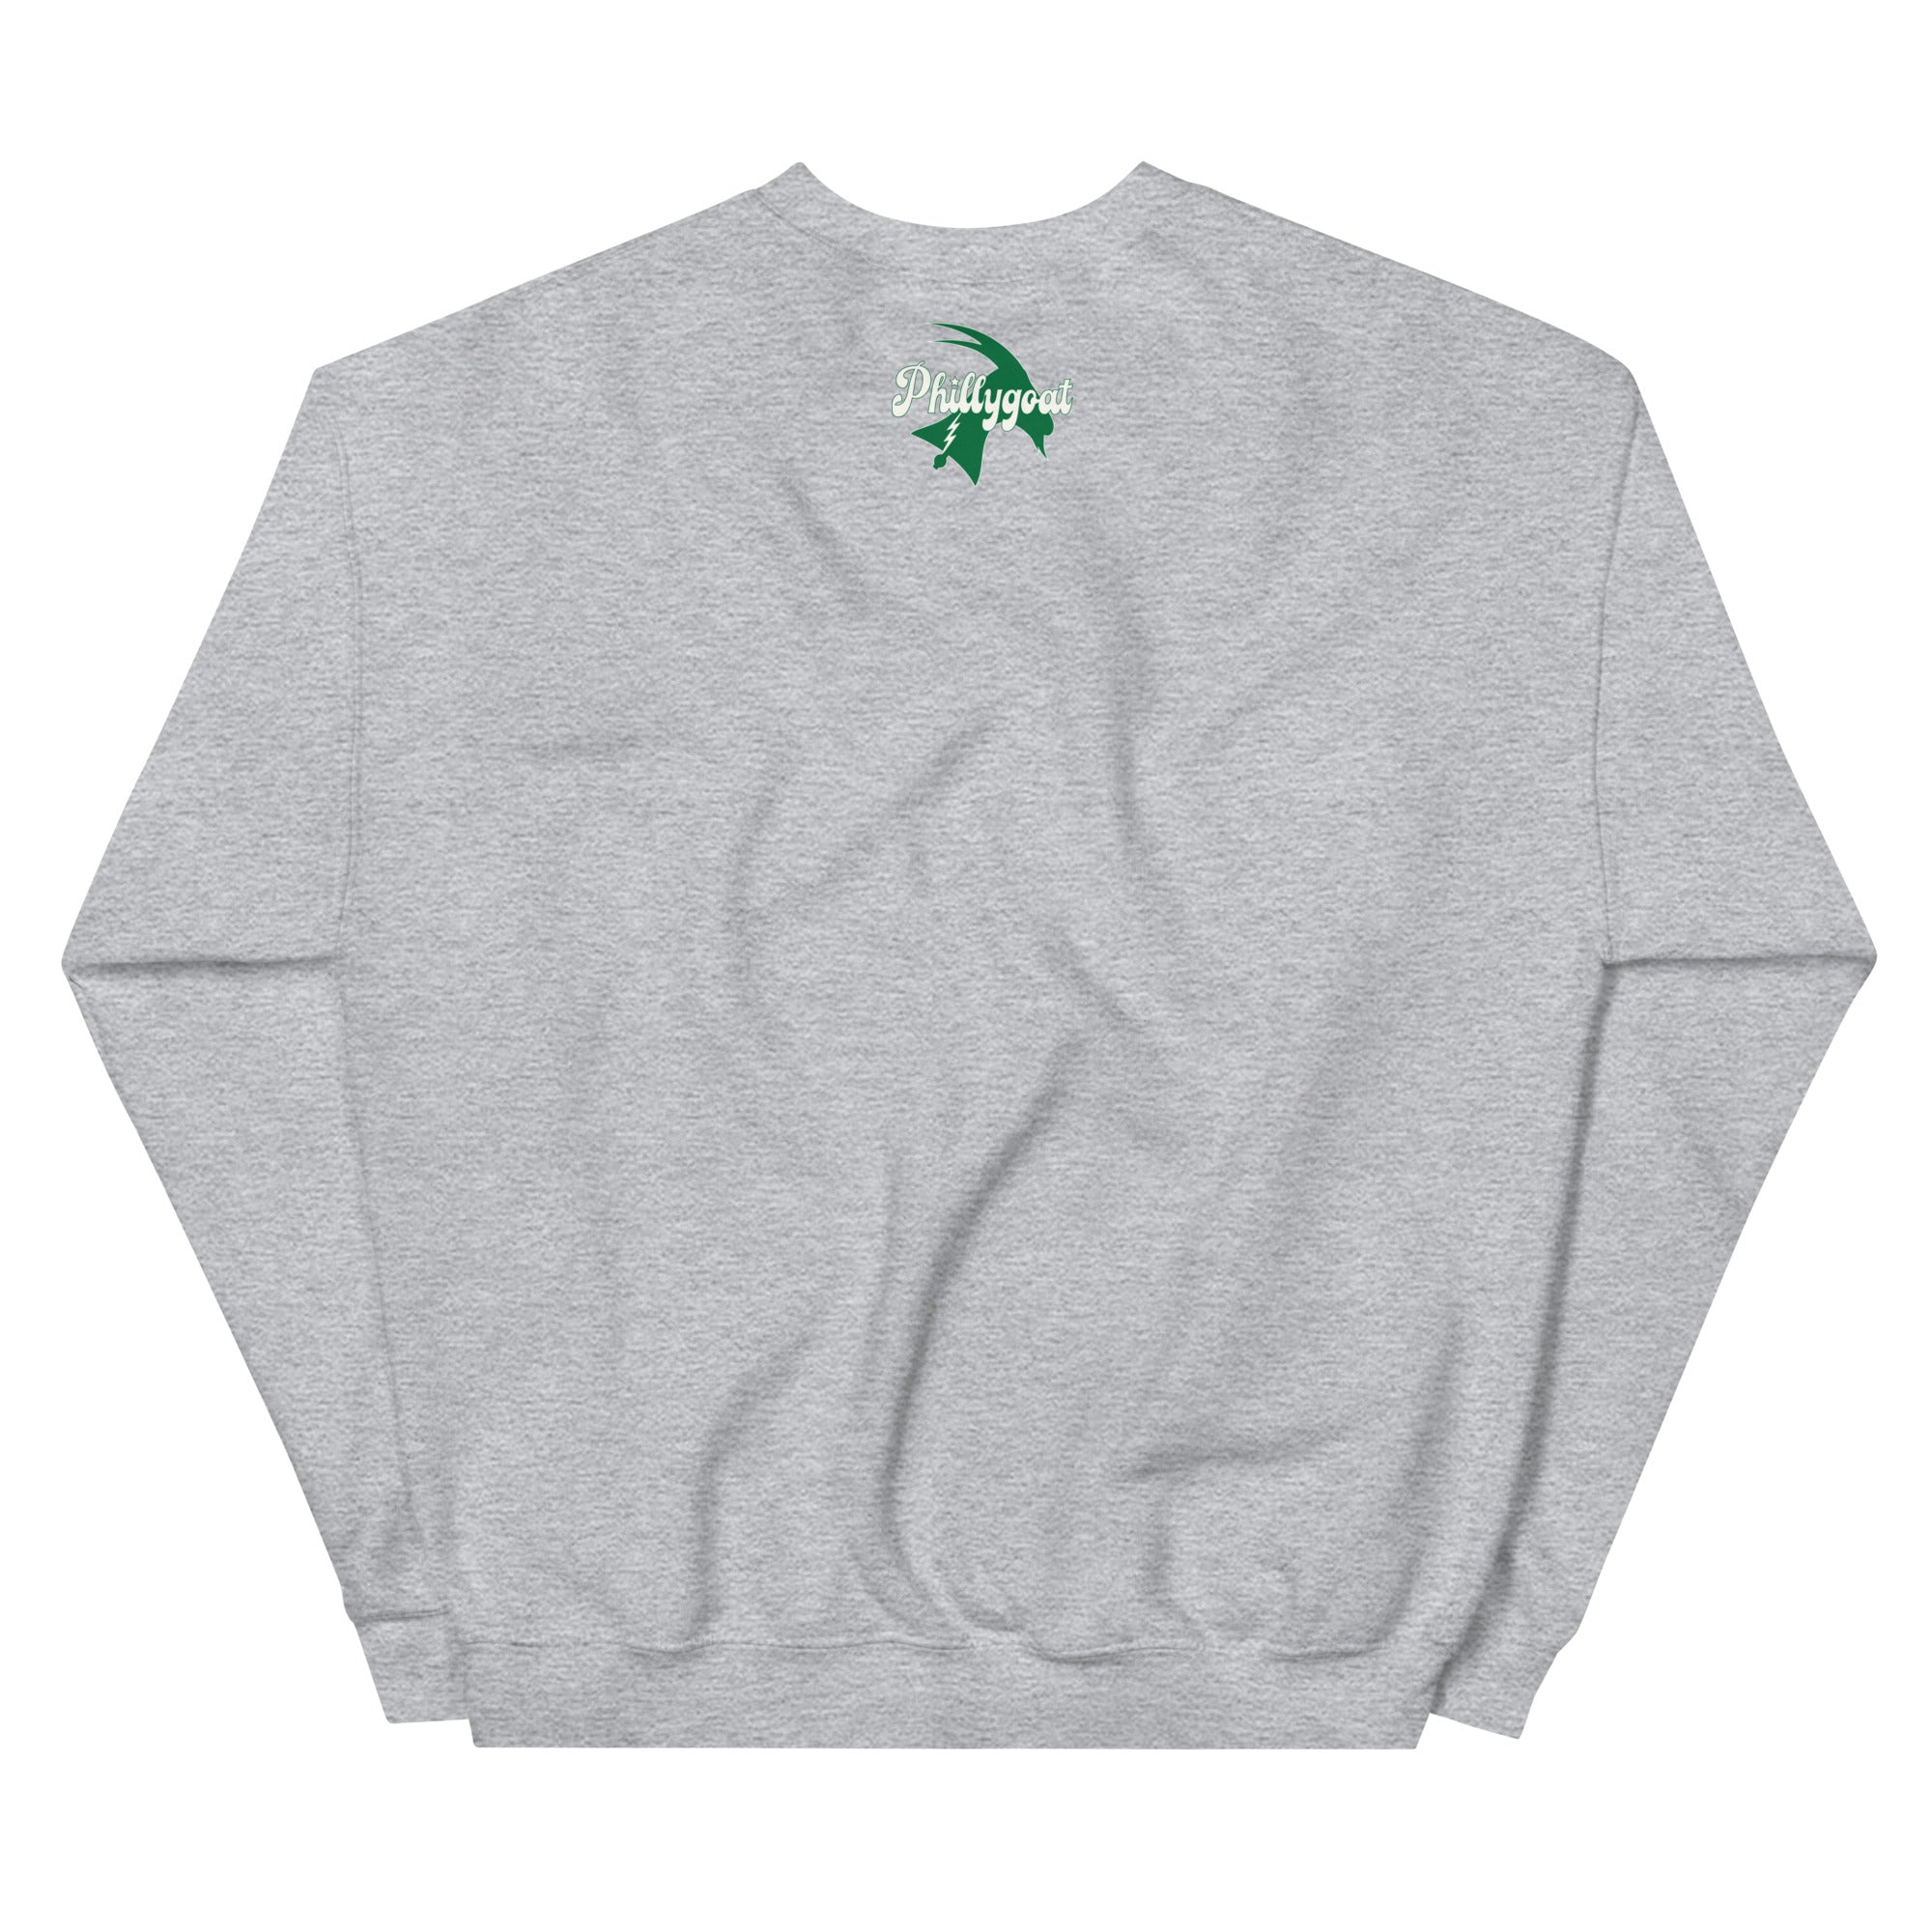 "Birds of War" Sweatshirt